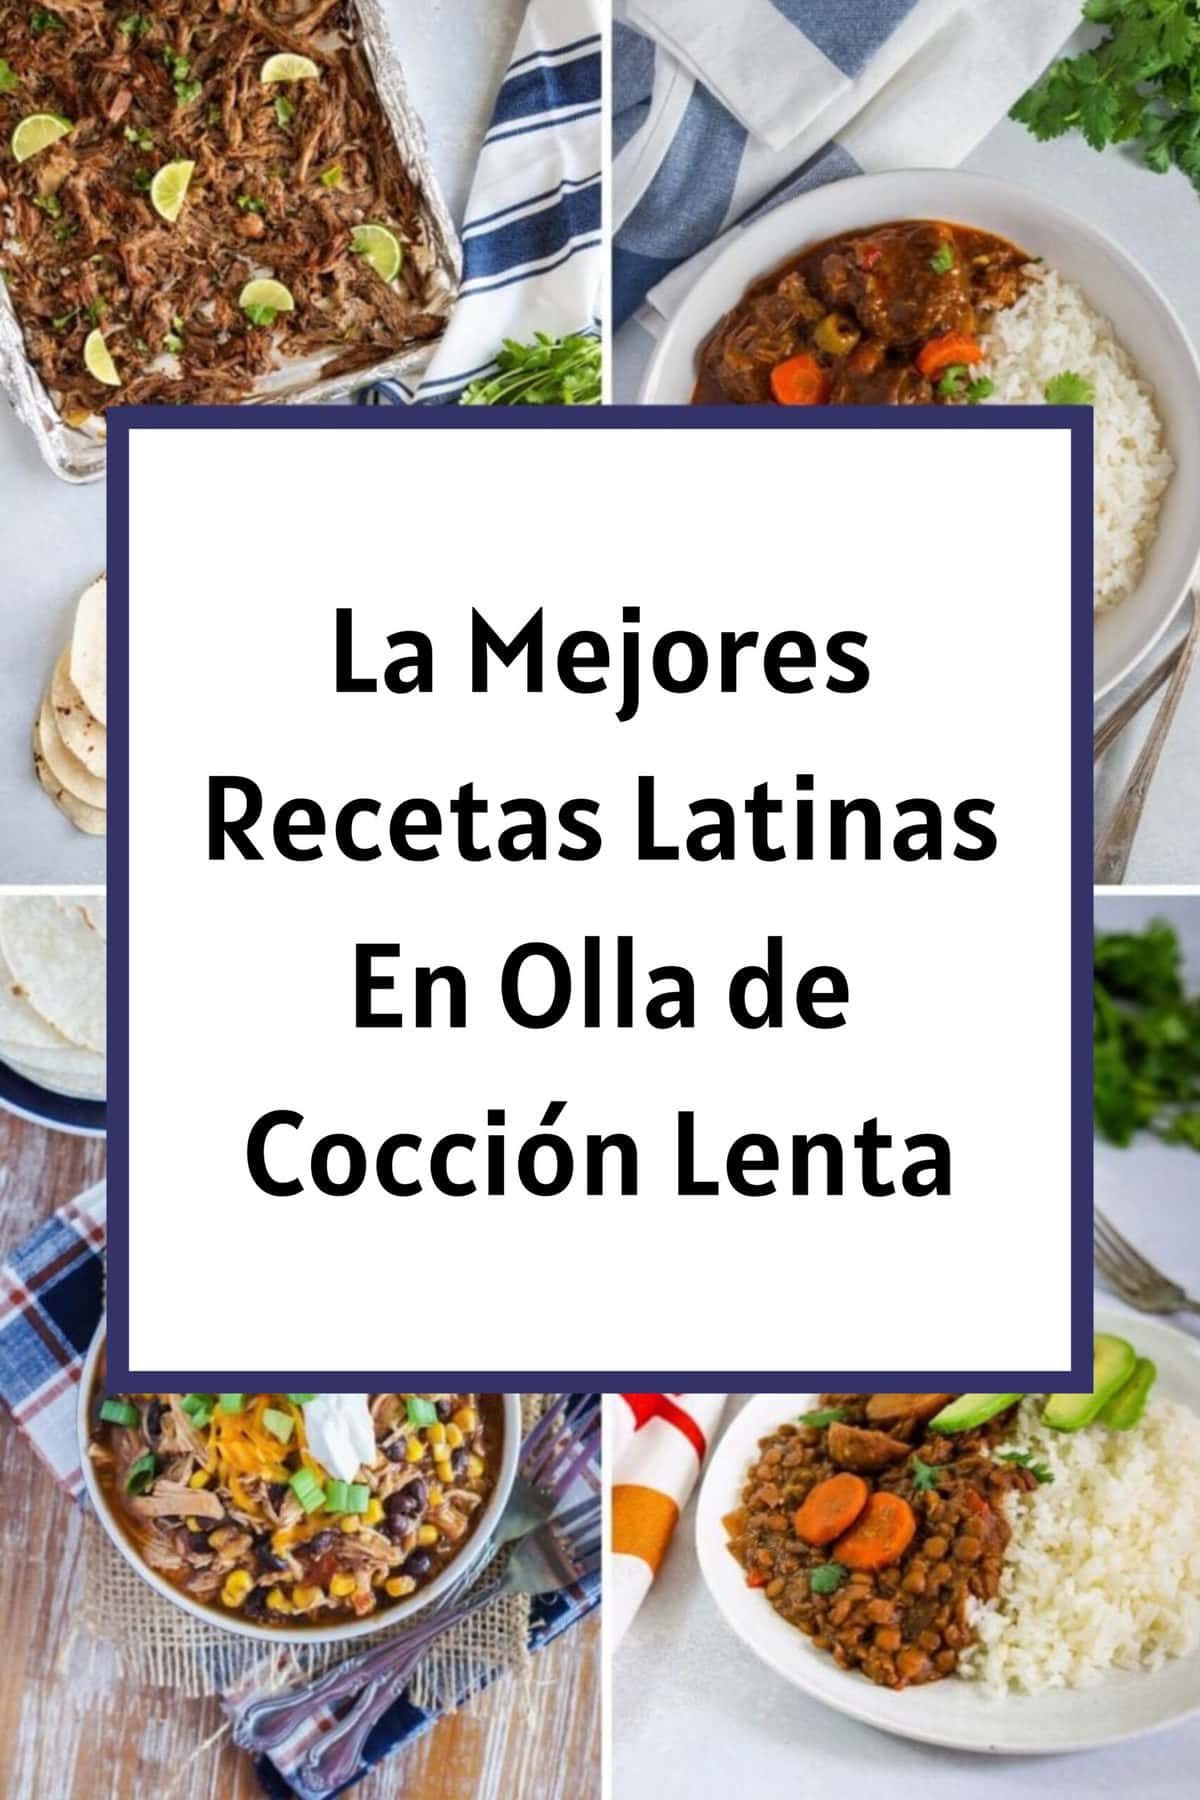 Las Mejores Recetas Latinas en Olla de Cocción Lenta. - My Dominican Kitchen